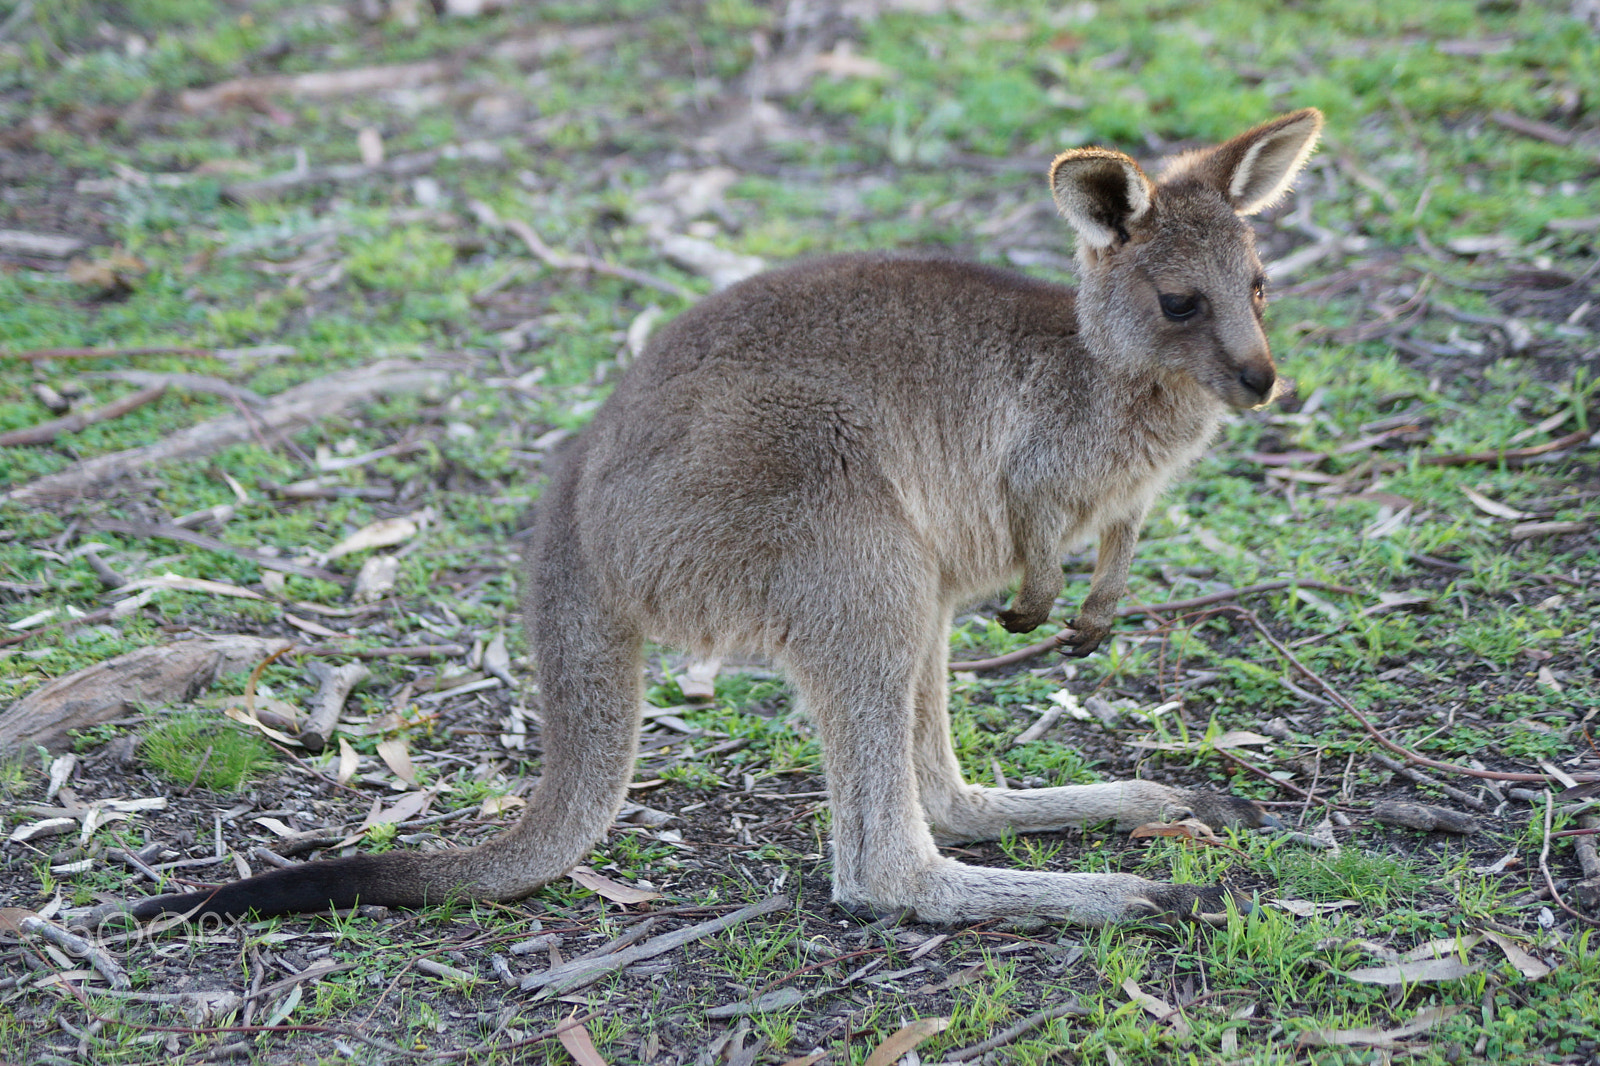 Sony SLT-A65 (SLT-A65V) sample photo. Young kangaroo photography